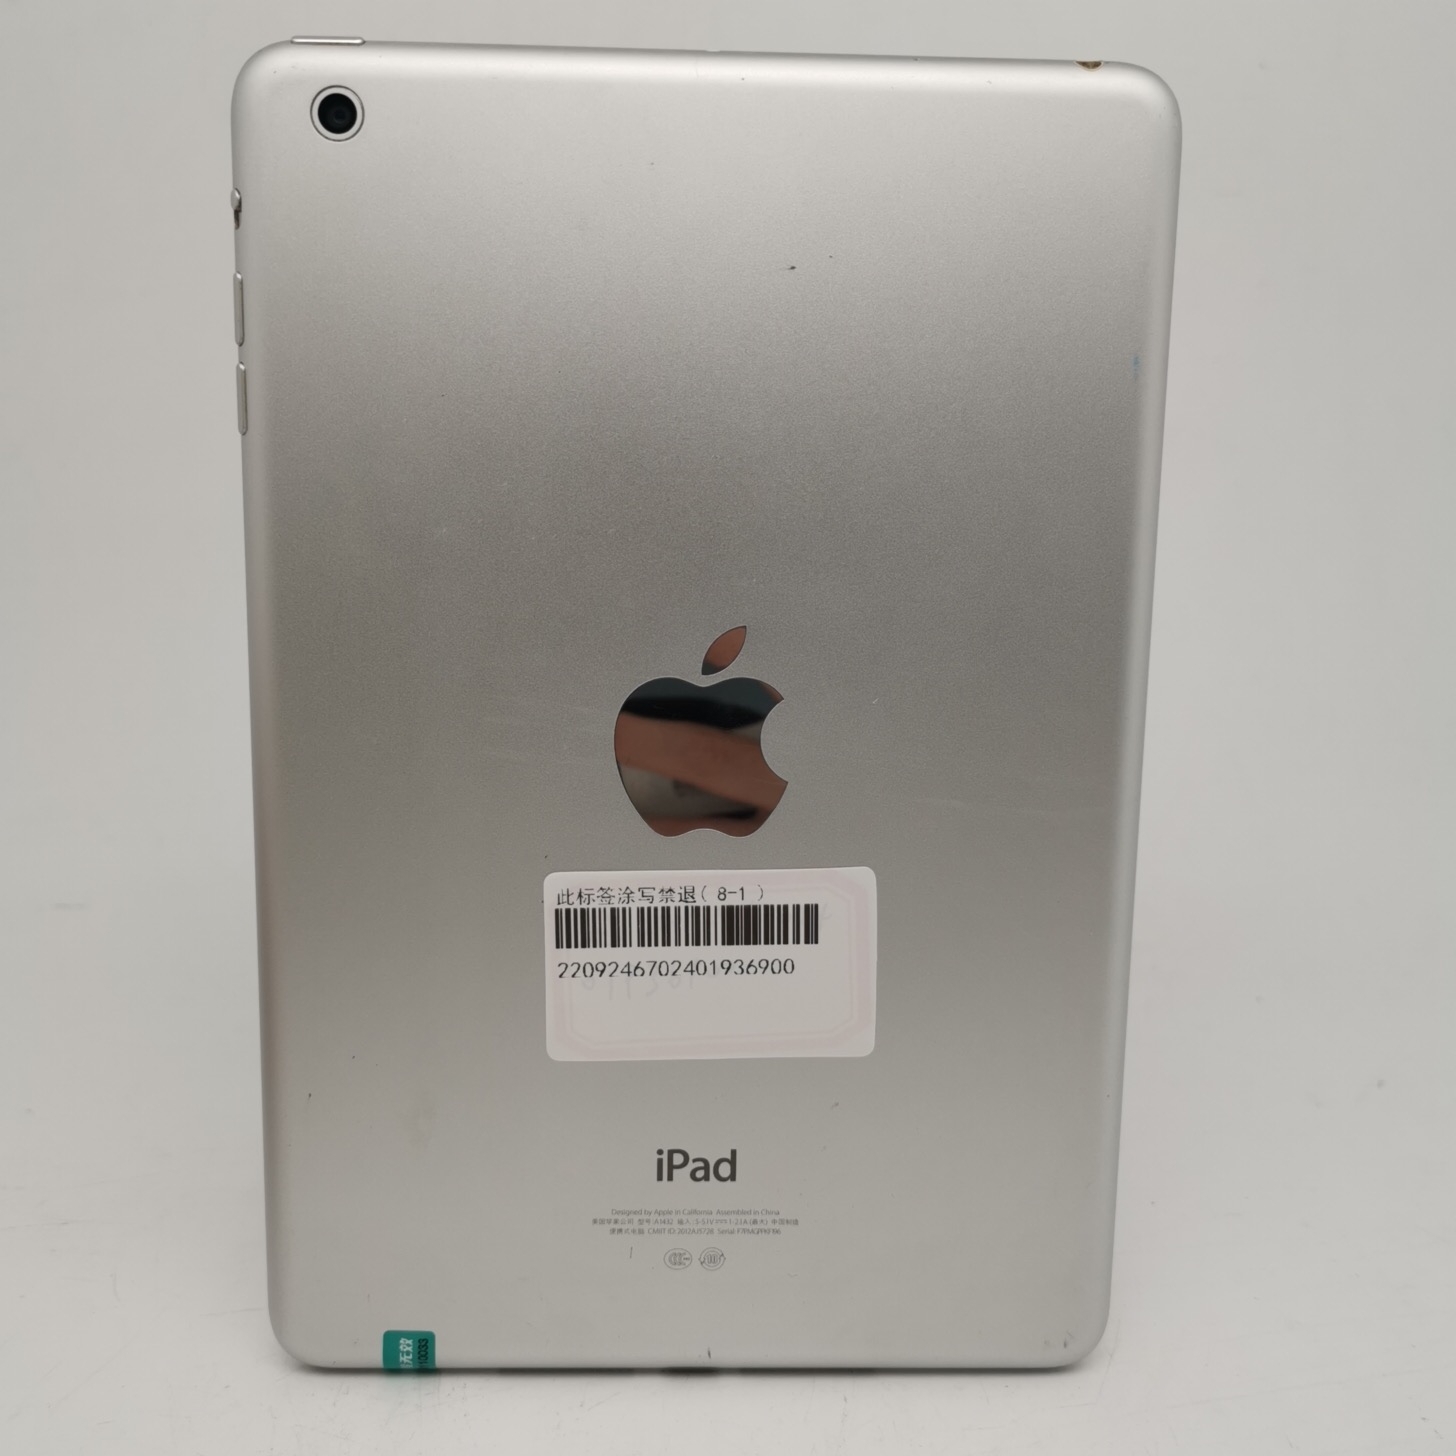 苹果【iPad Mini 1】WIFI版 白色 16G 国行 8成新 